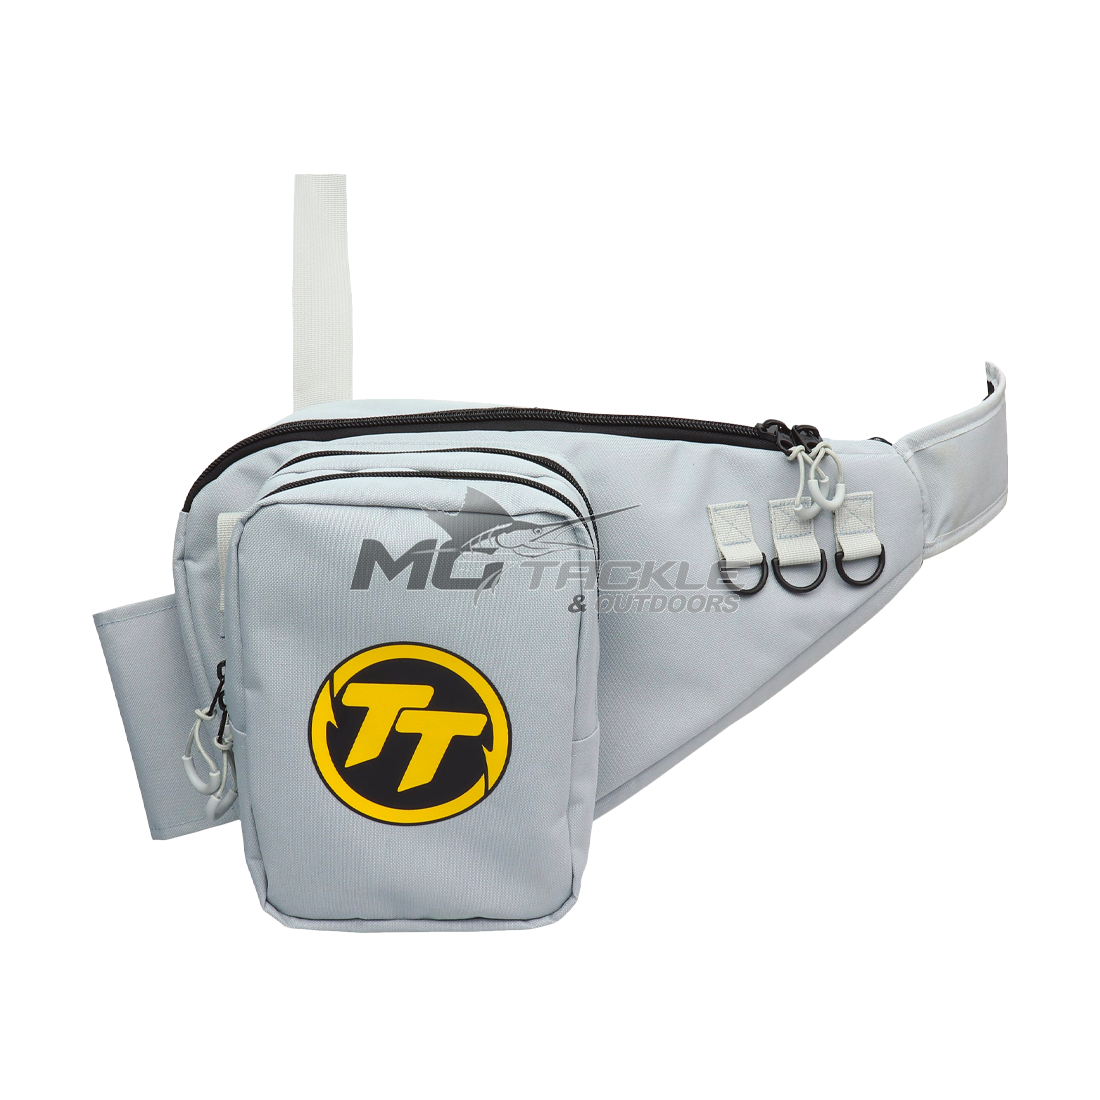 TT Tackle Sling Bag  MoTackle & Outdoors